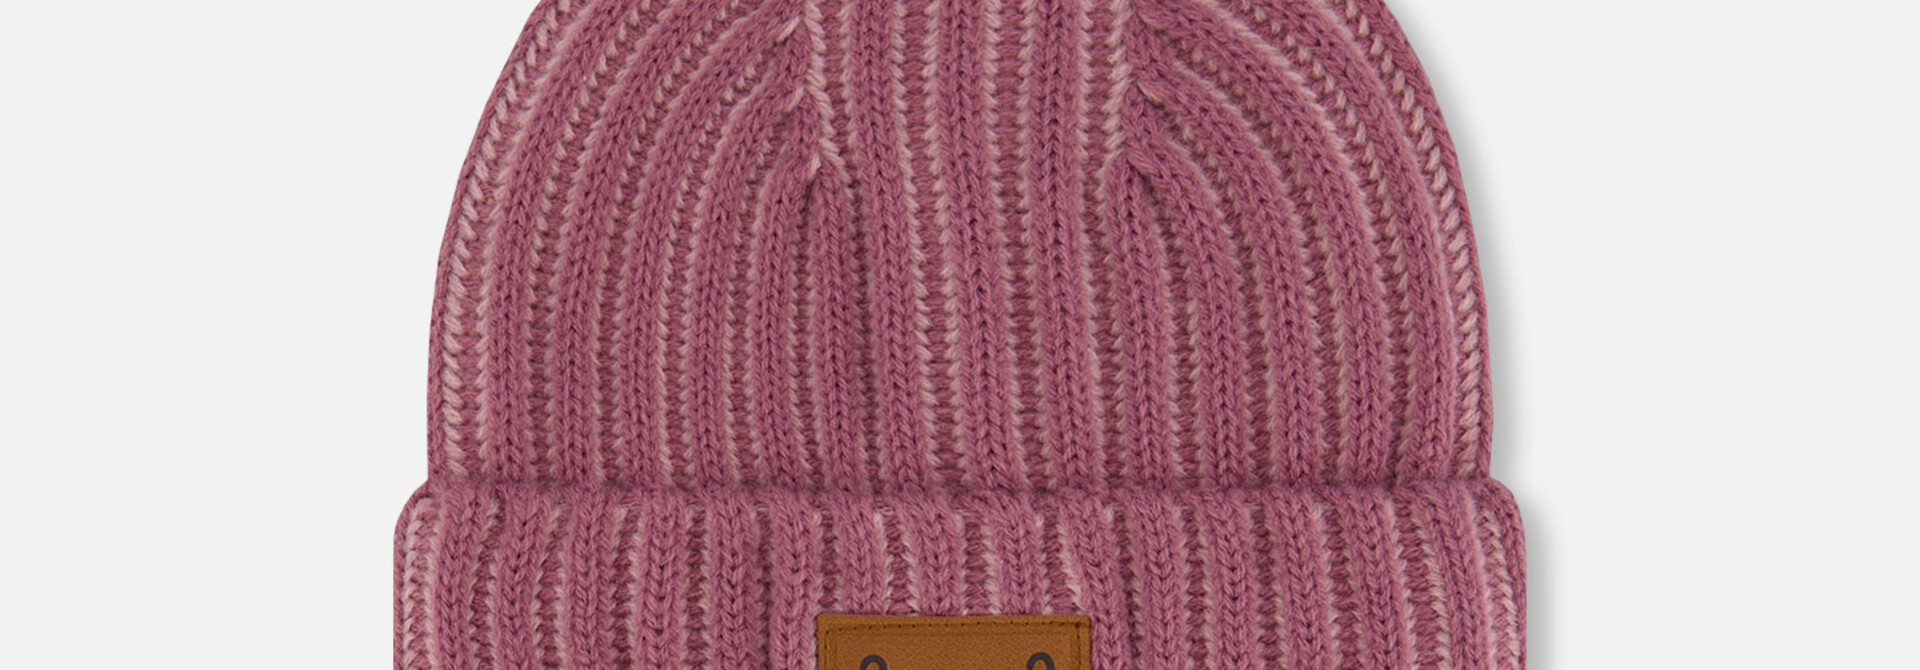 Tuque en tricot - ORCHID